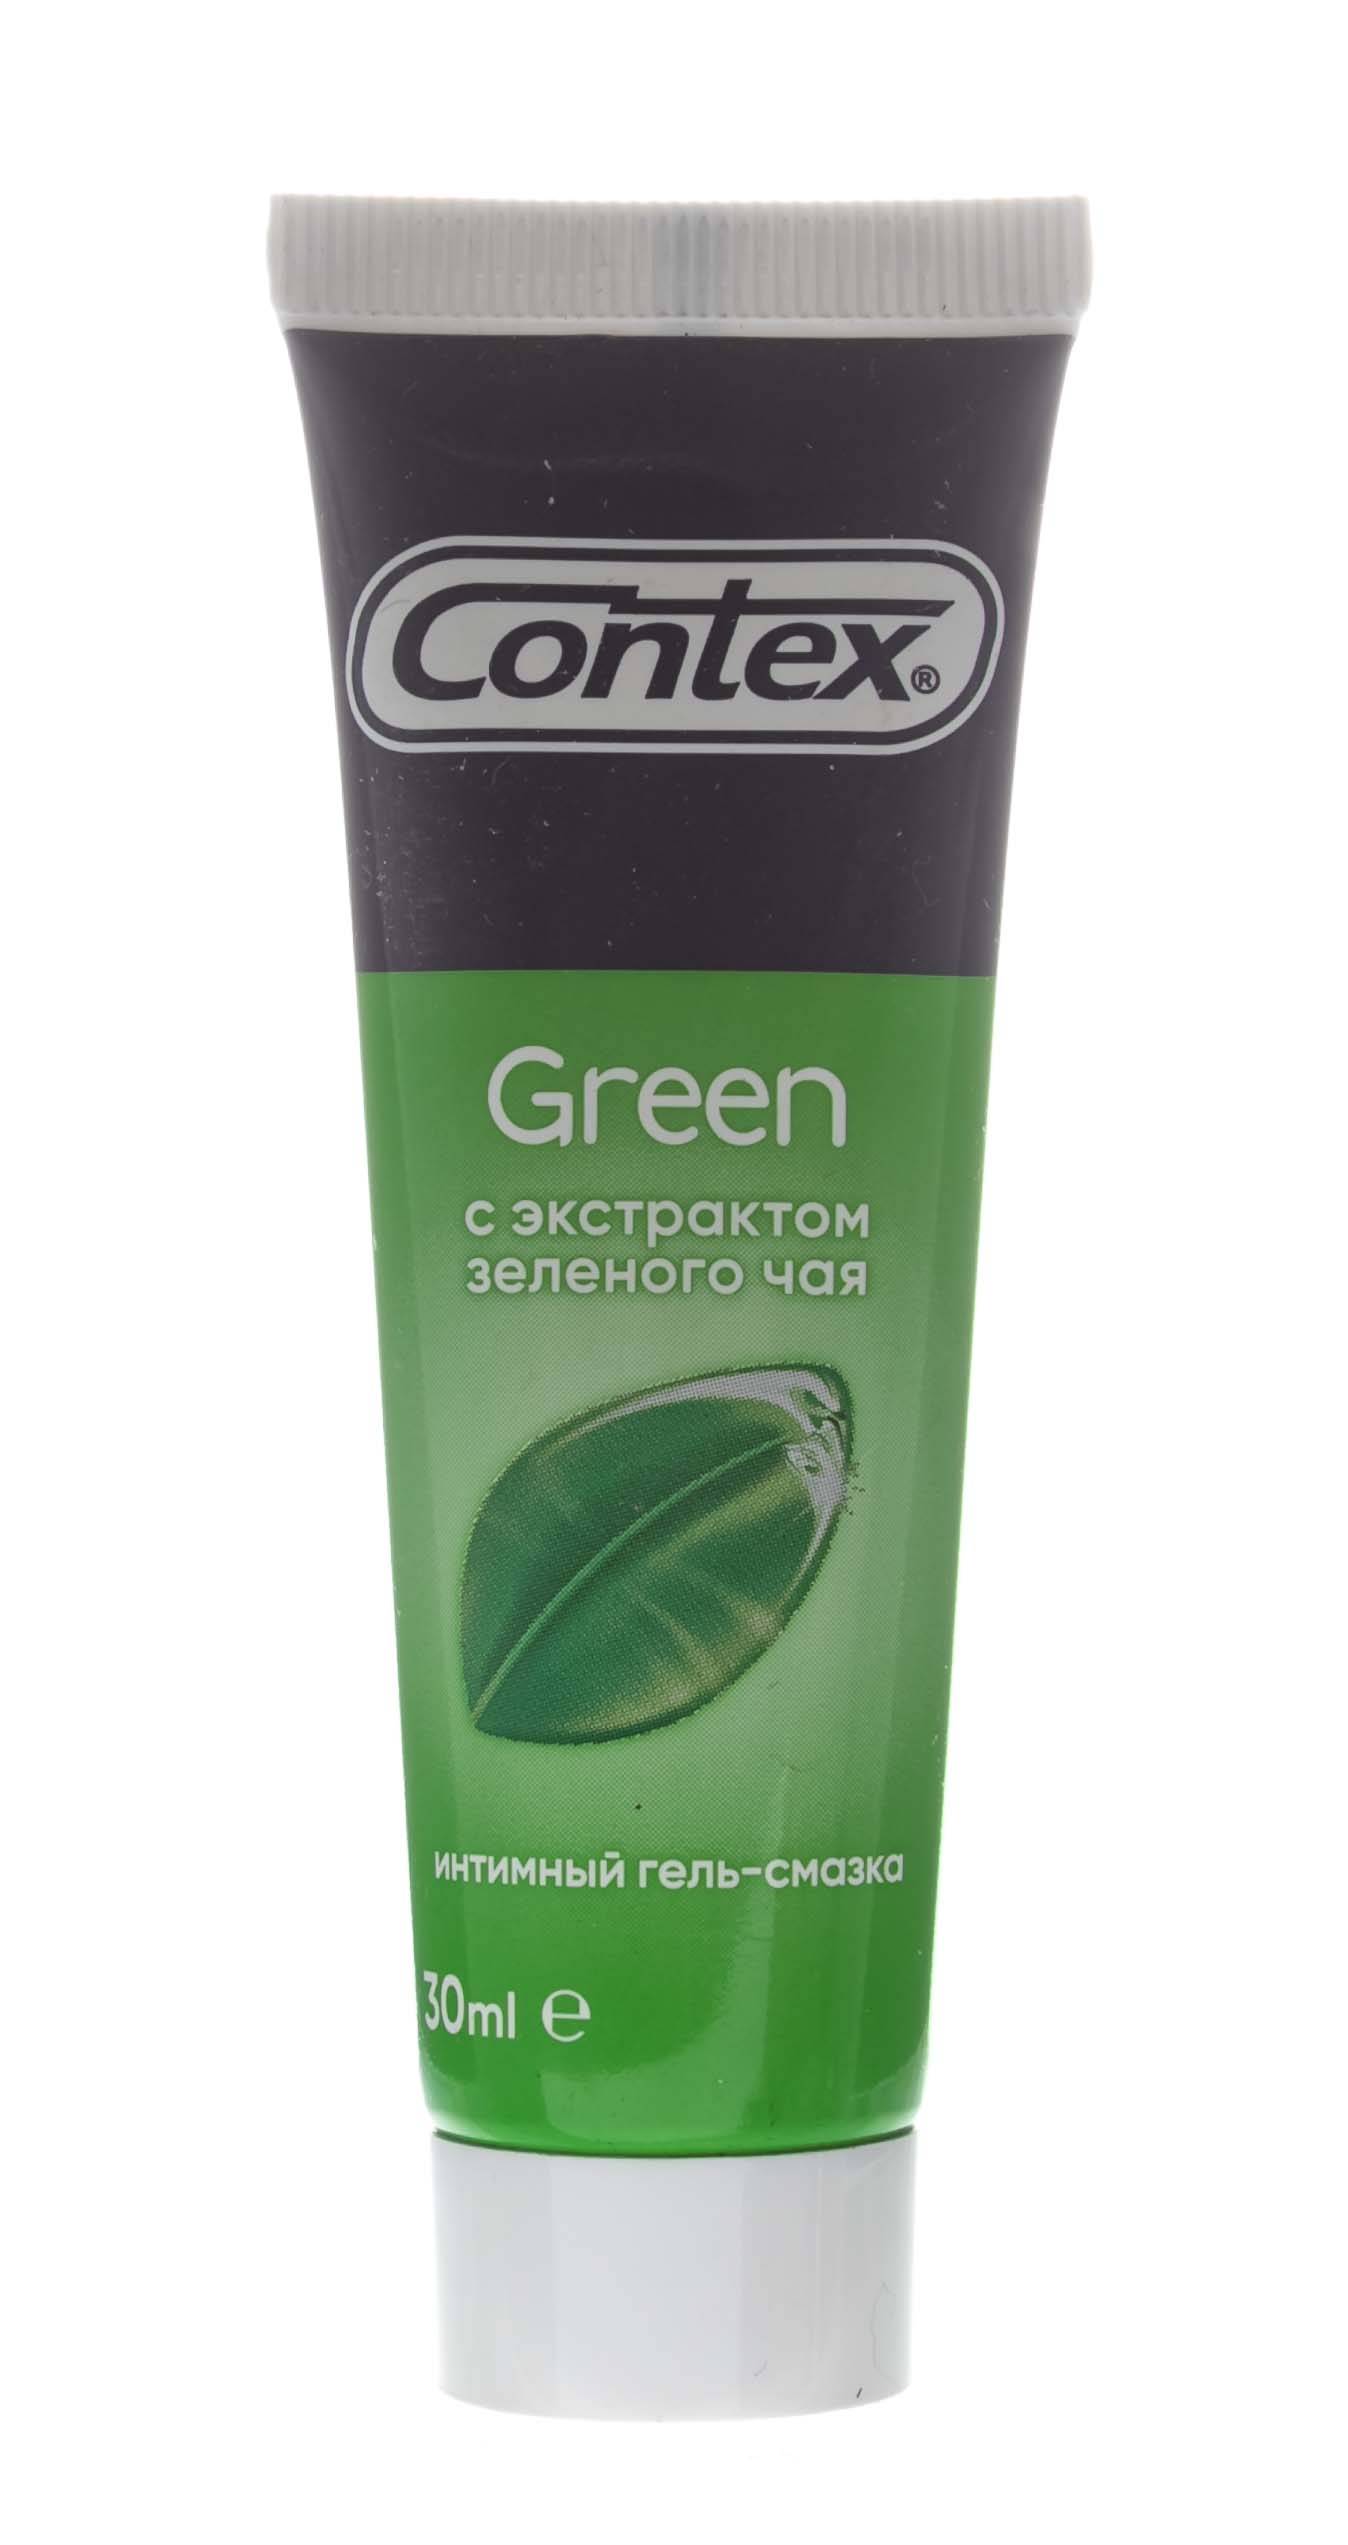 Contex Гель-смазка Green, 30 мл (Contex, Гель-смазка) contex интимный гель смазка green 100 мл contex гель смазка